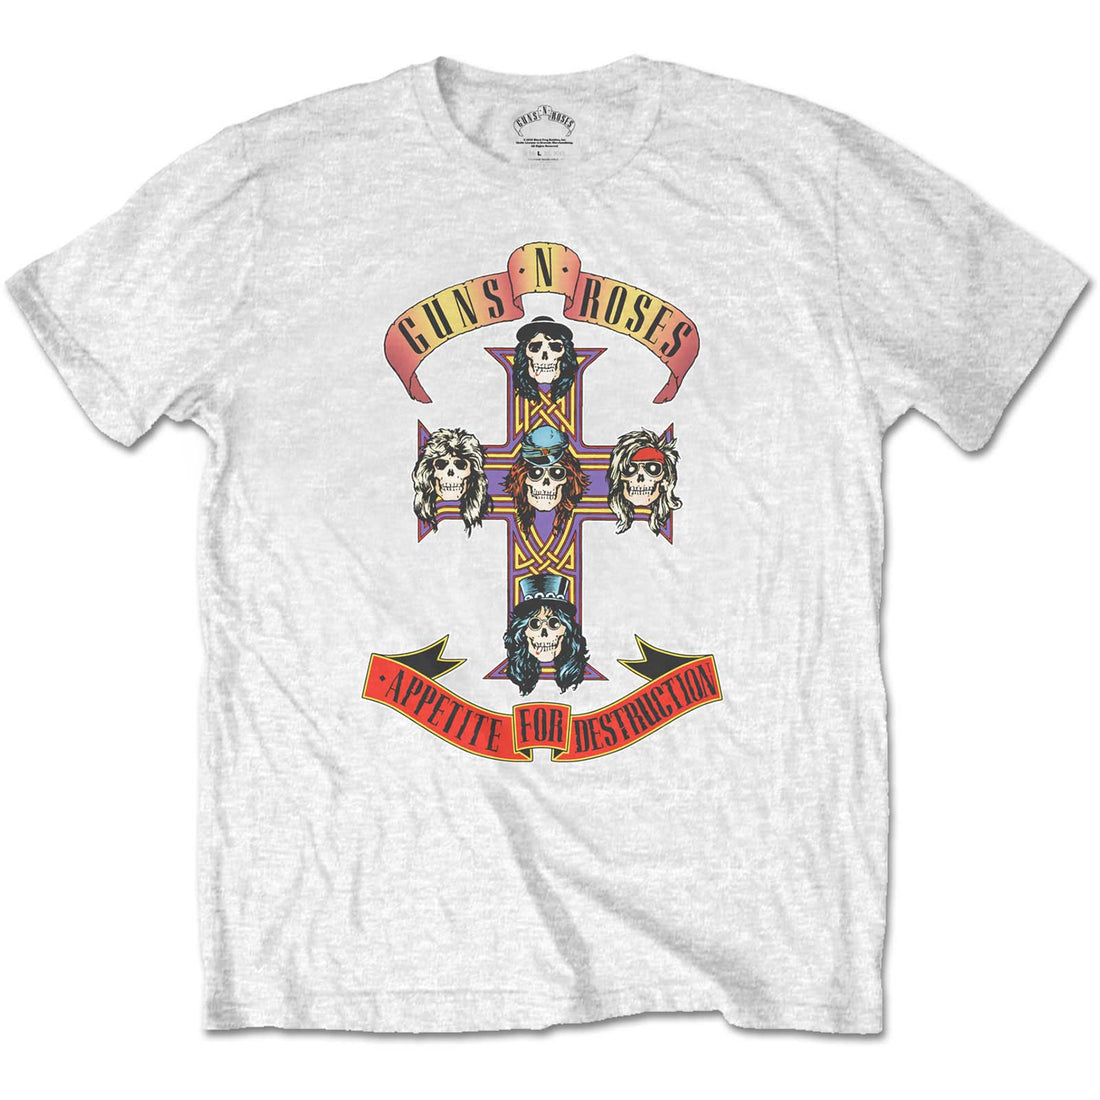 Guns N' Roses Kids T-Shirt: Appetite for Destruction (Retail Pack)